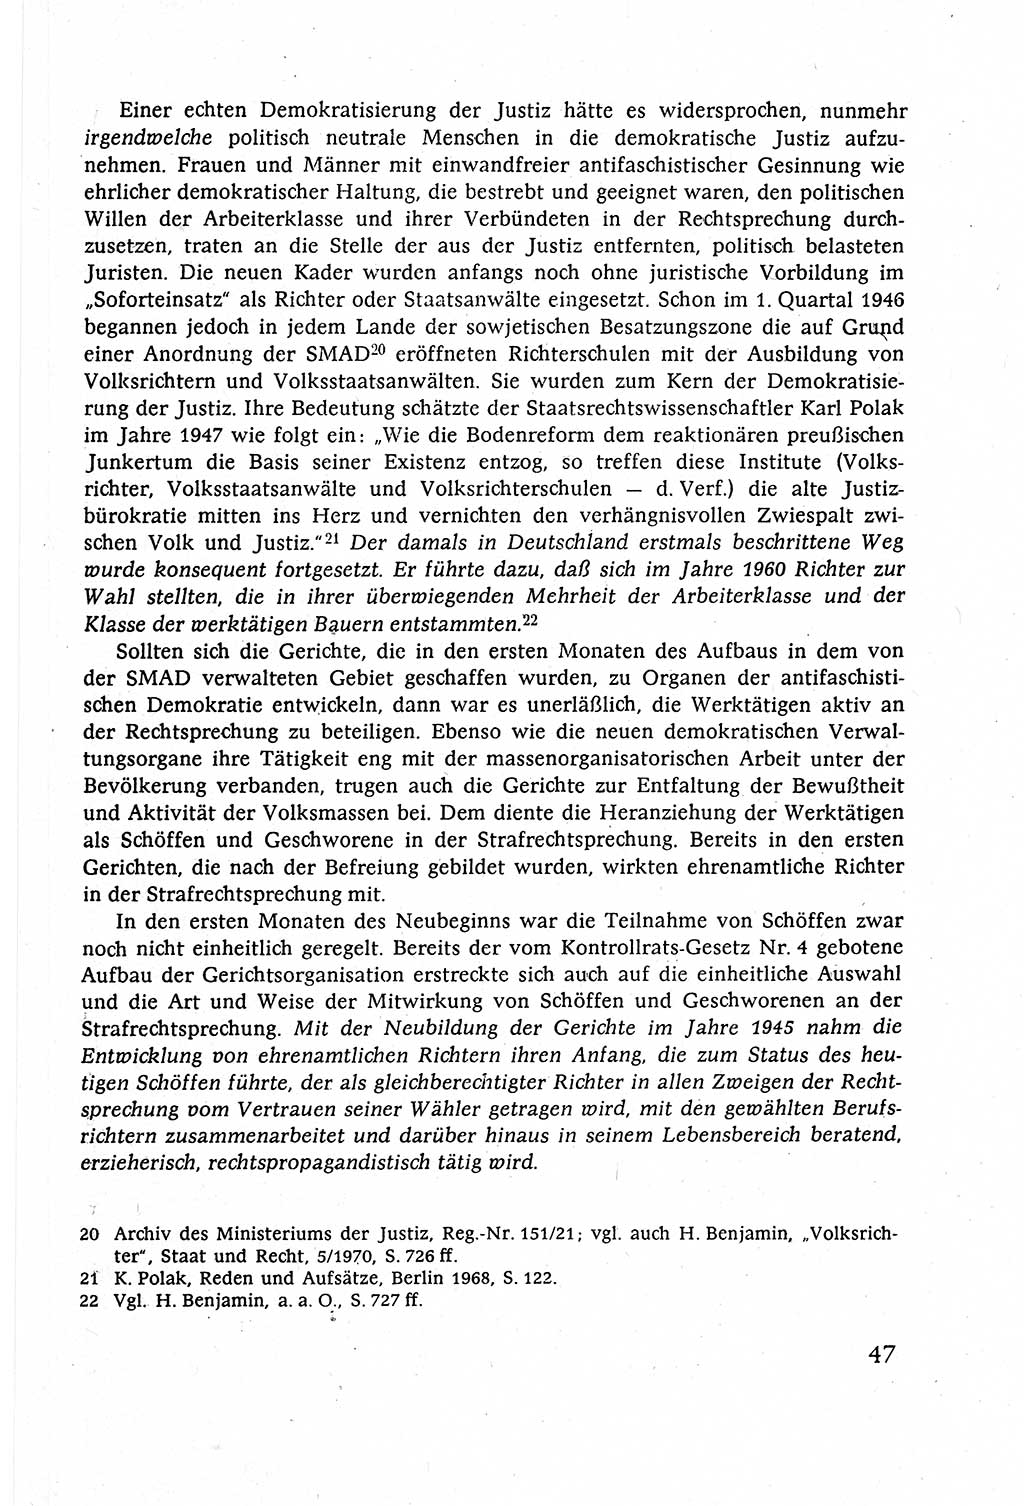 Strafverfahrensrecht [Deutsche Demokratische Republik (DDR)], Lehrbuch 1977, Seite 47 (Strafverf.-R. DDR Lb. 1977, S. 47)